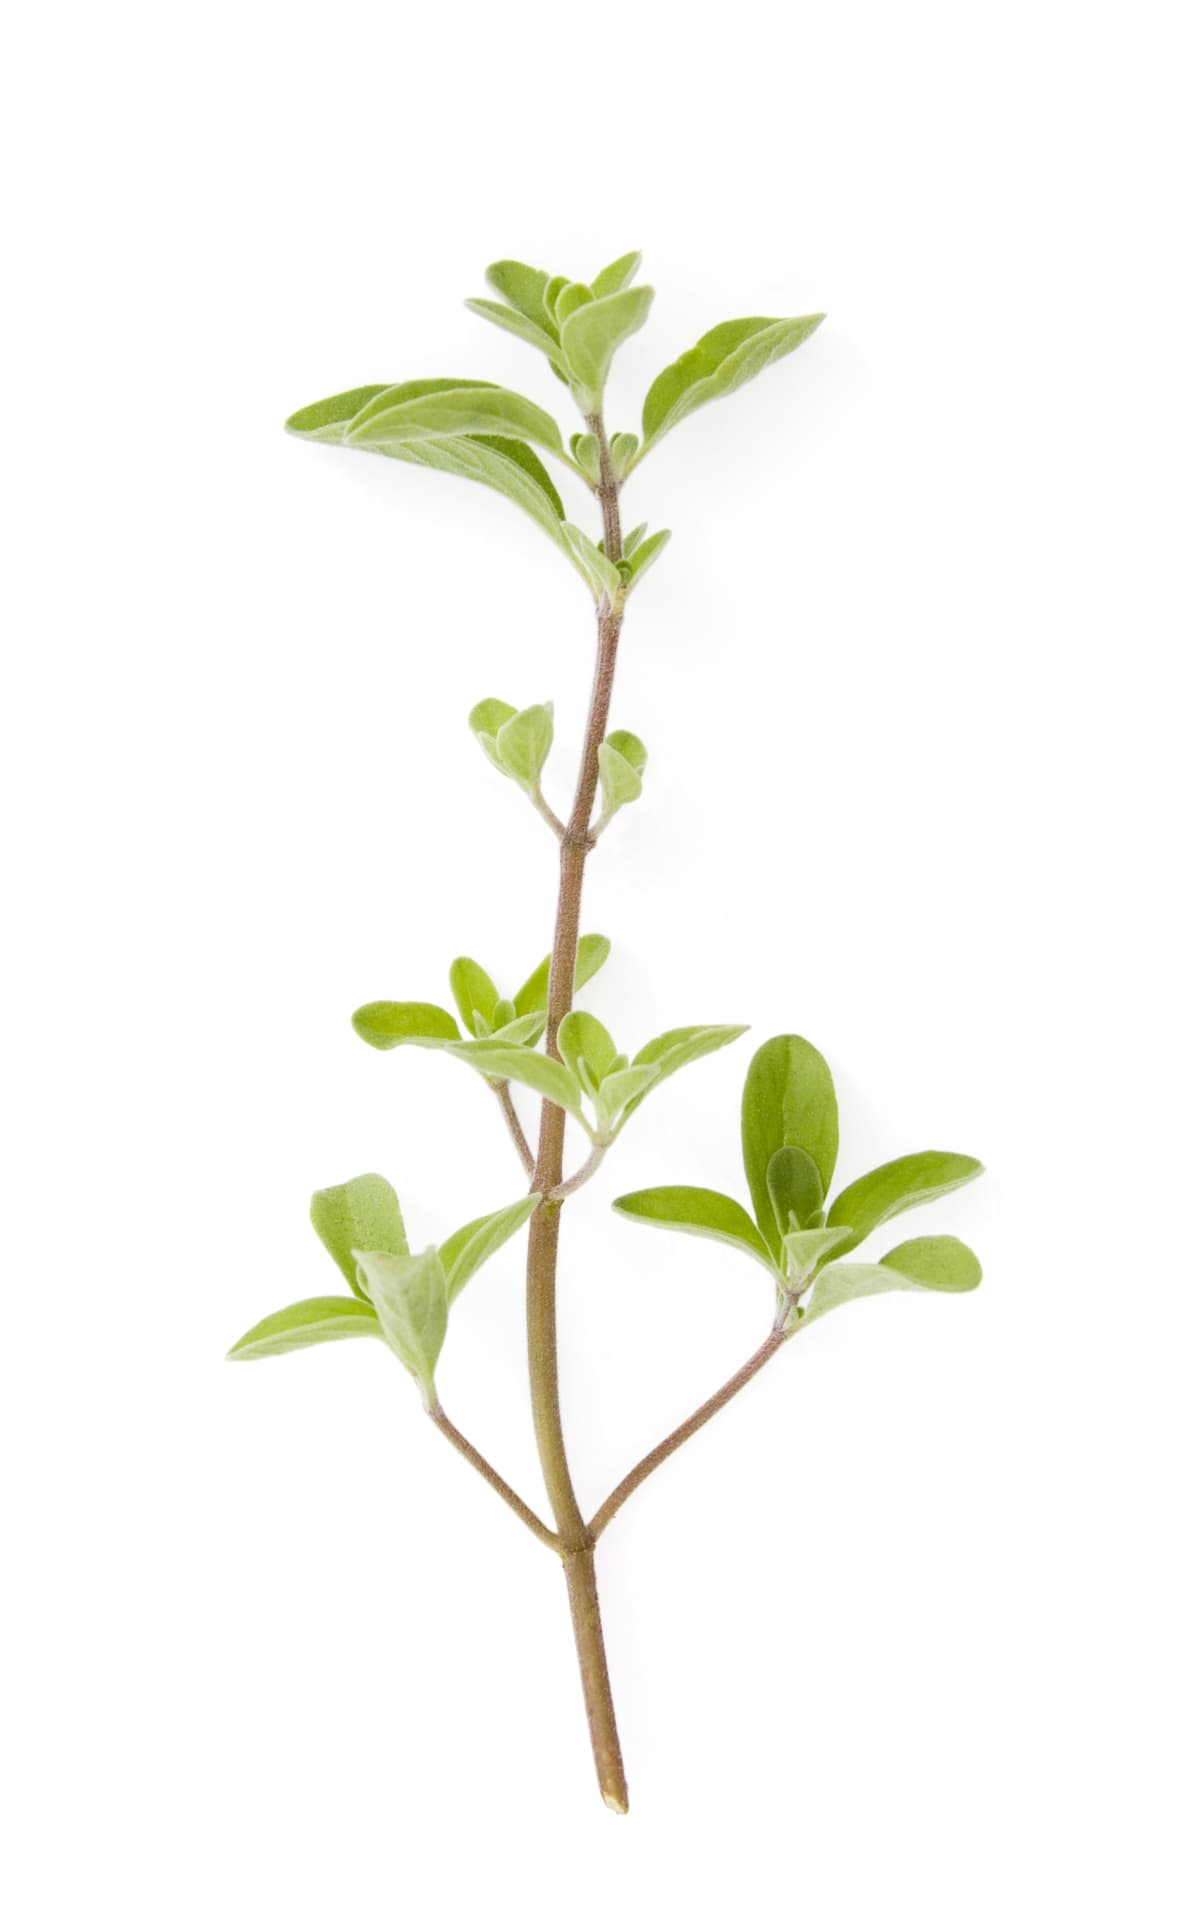 Vertical image of the growing herb golden marjoram